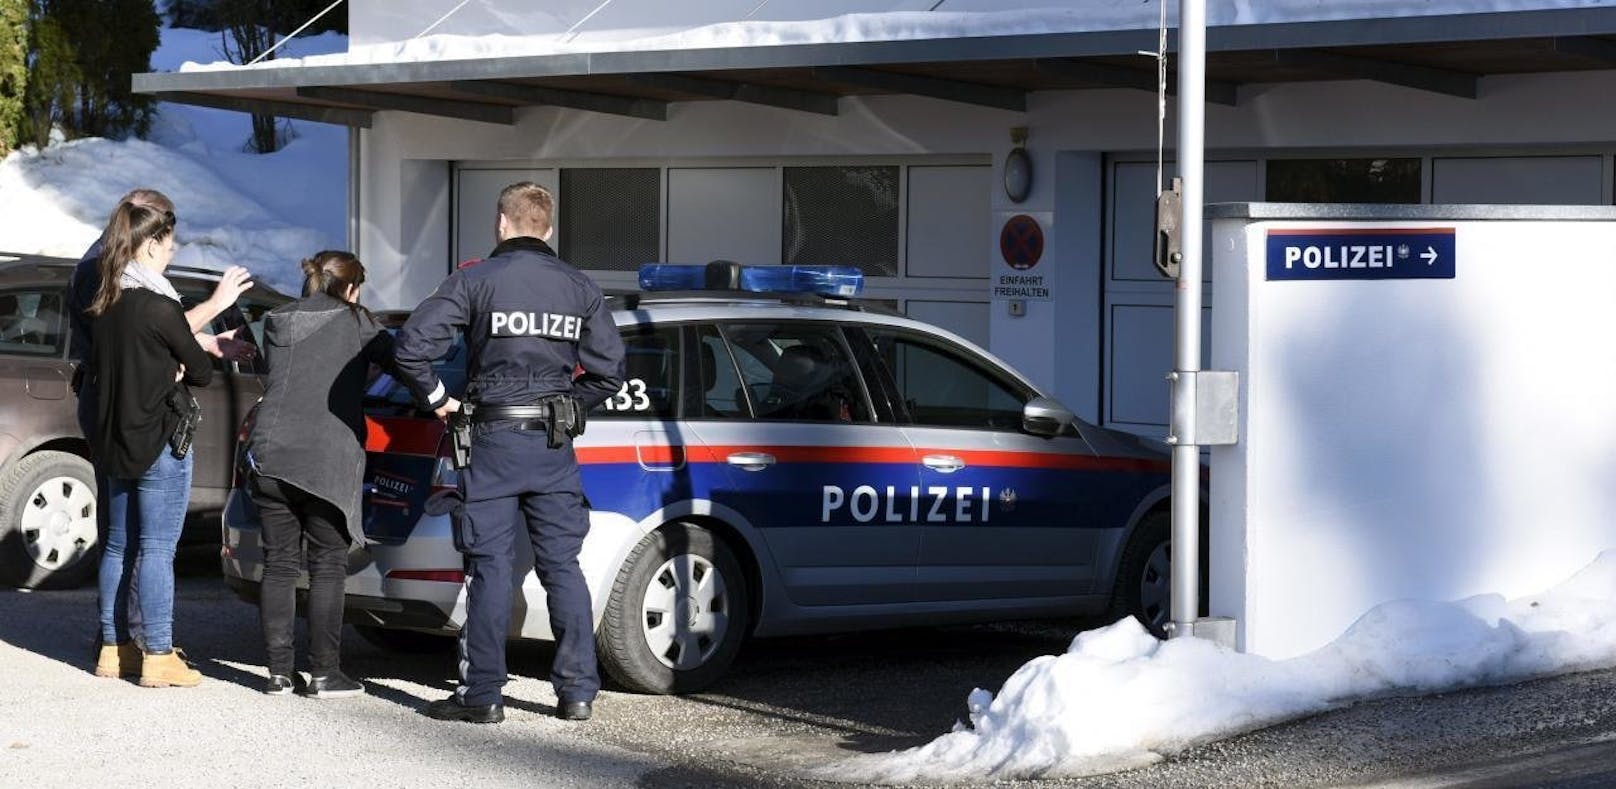 Die Polizei nahm die Salzburgerin mit auf die Dienststelle.